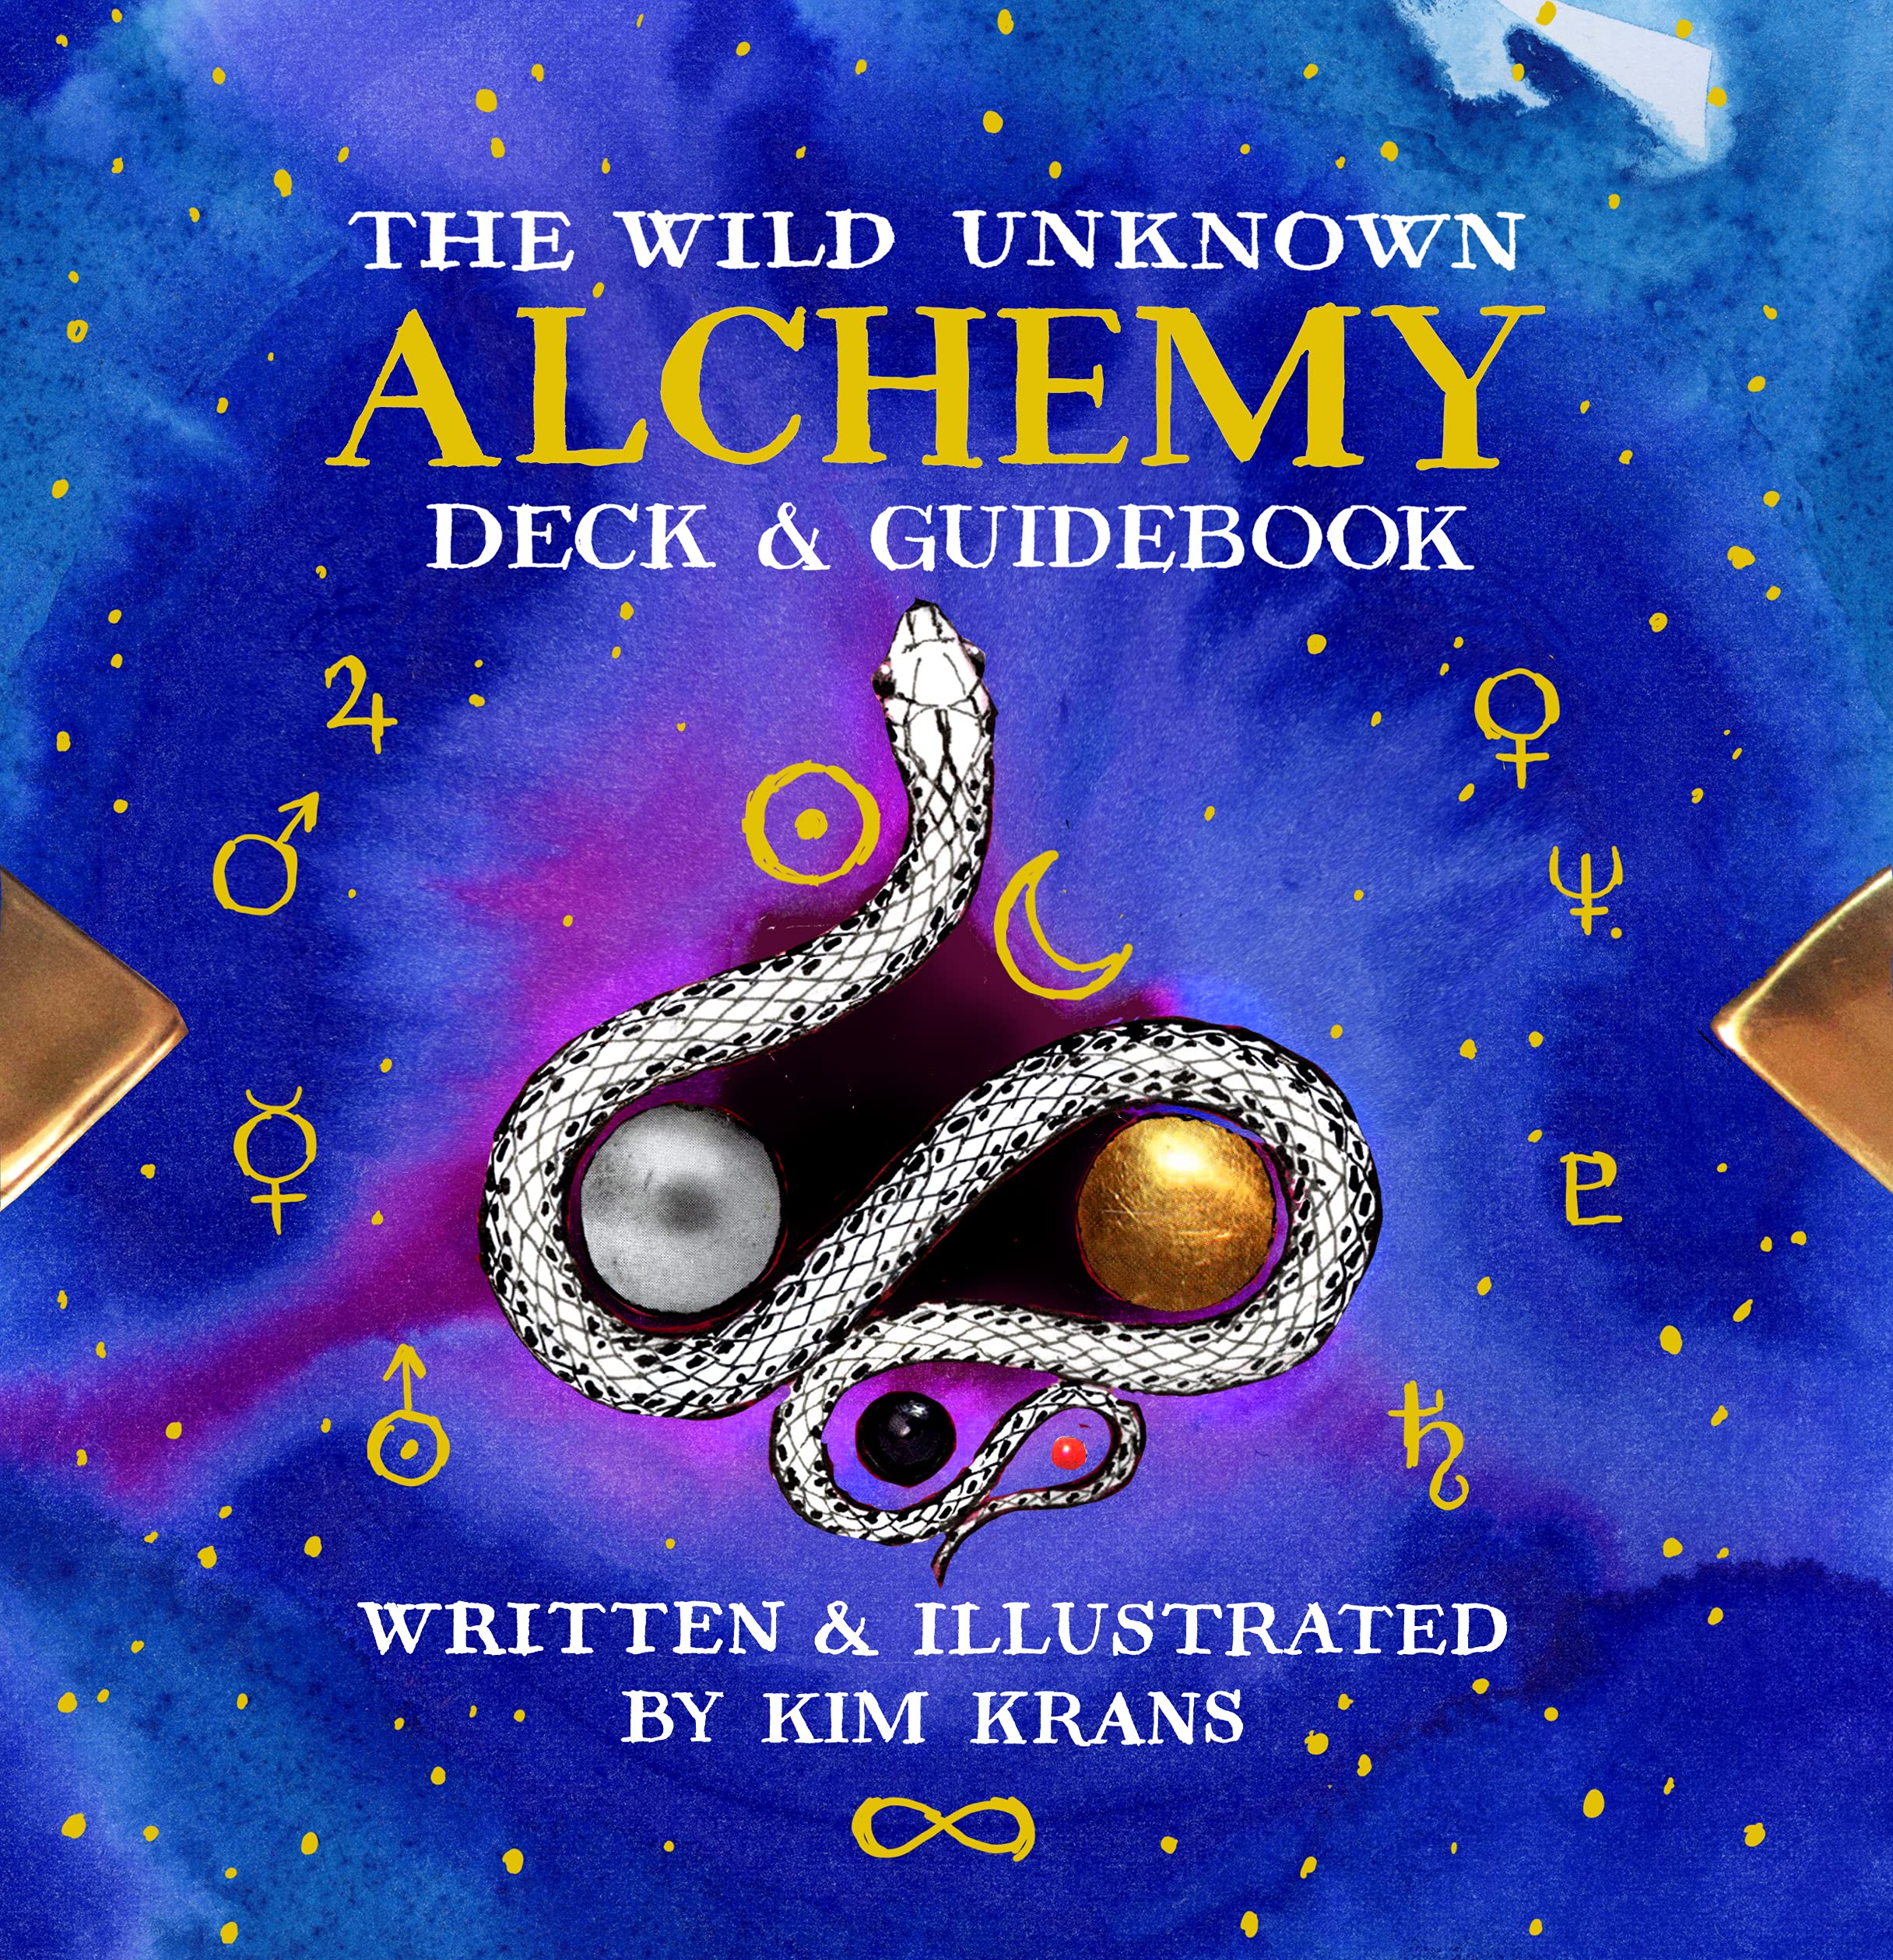 The Wild Unknown Alchemy Deck